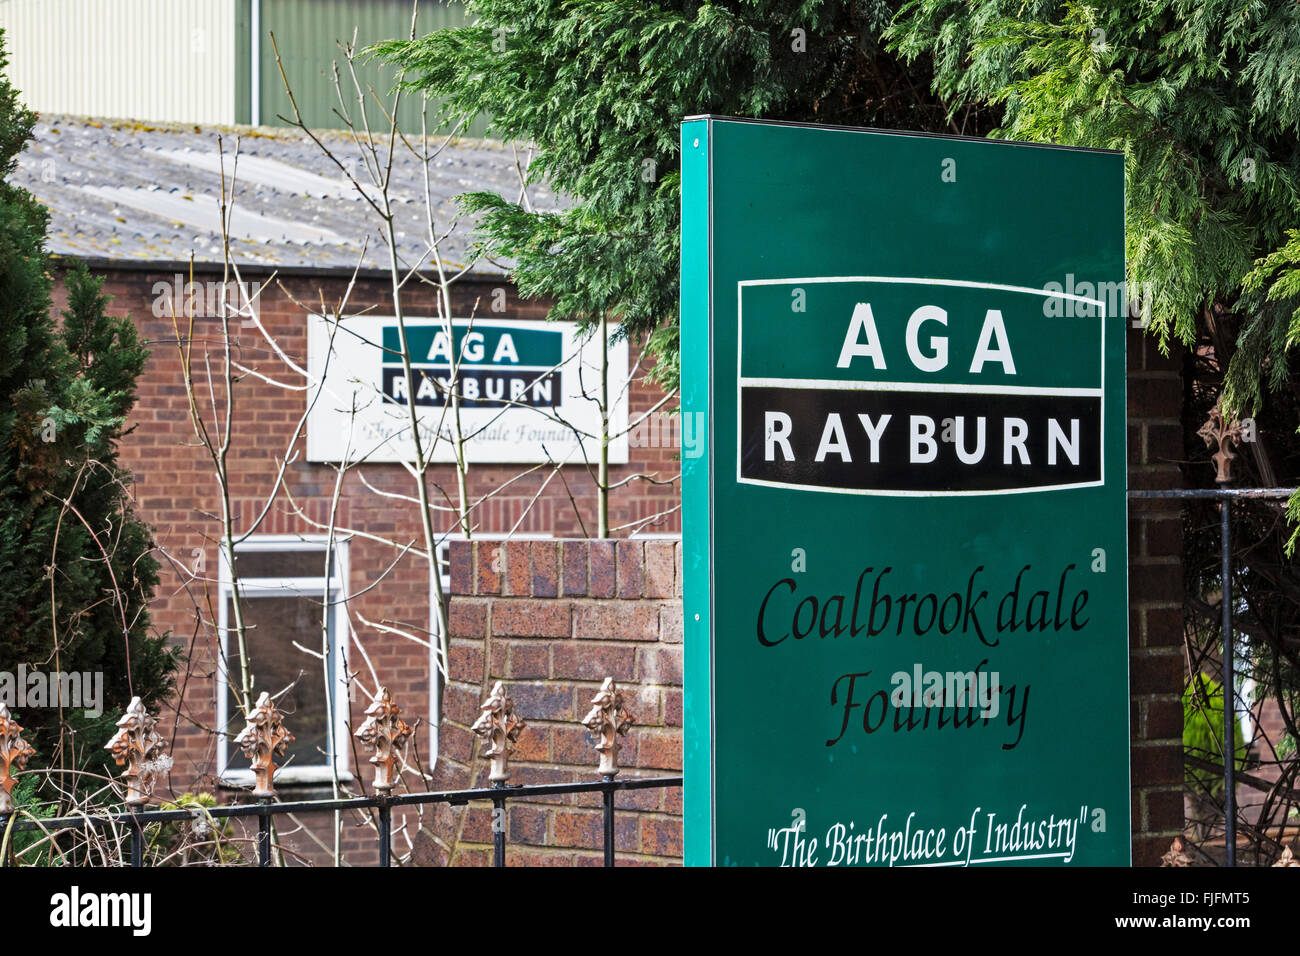 L'Aga Rayburn fonderia di Coalbrookdale, Shropshire, Inghilterra, e si trova nell'Ironbridge Gorge sito Patrimonio Mondiale. Foto Stock